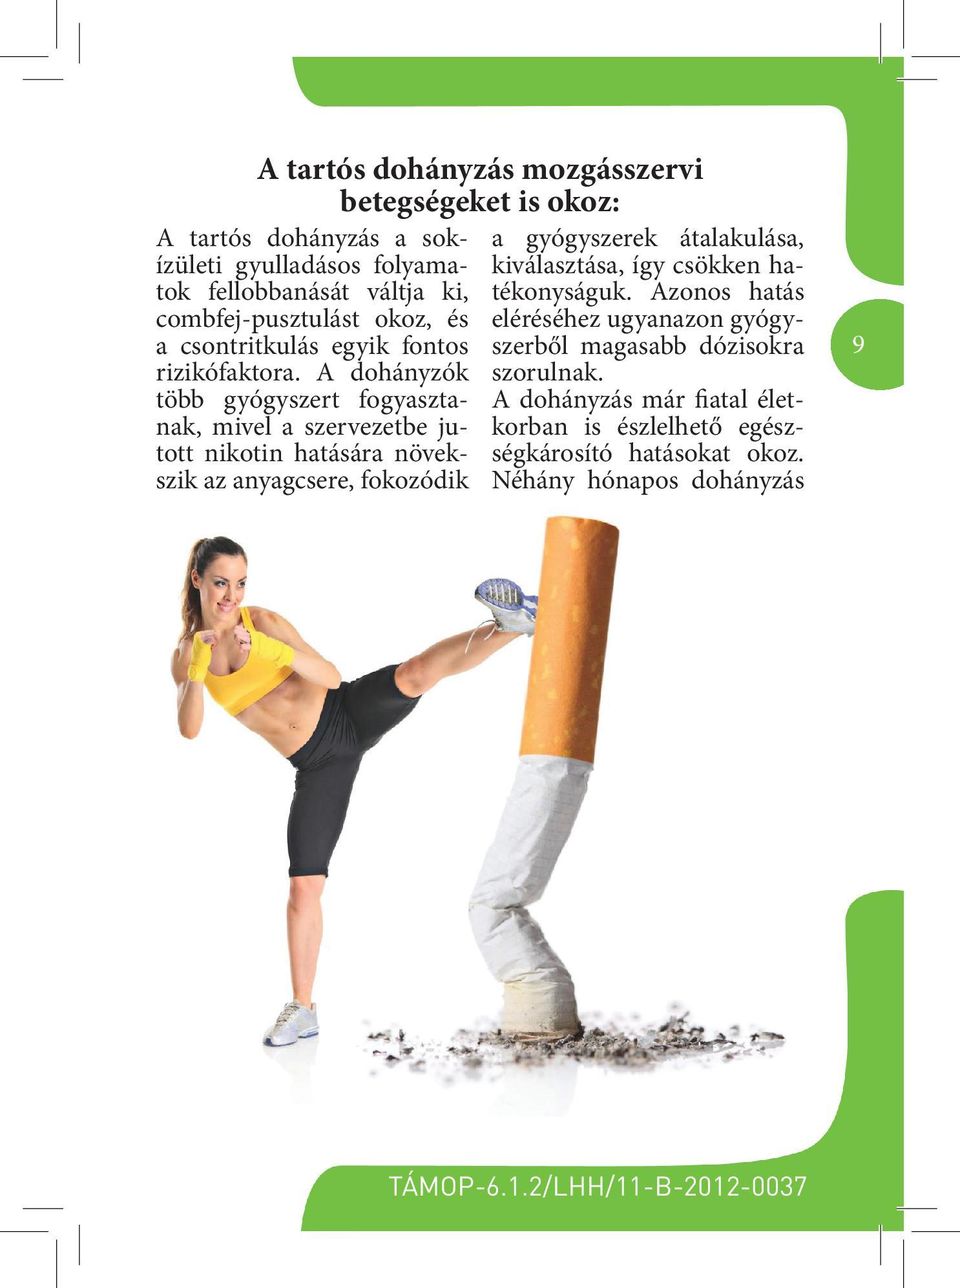 A dohányzók több gyógyszert fogyasztanak, mivel a szervezetbe jutott nikotin hatására növekszik az anyagcsere, fokozódik a gyógyszerek átalakulása,